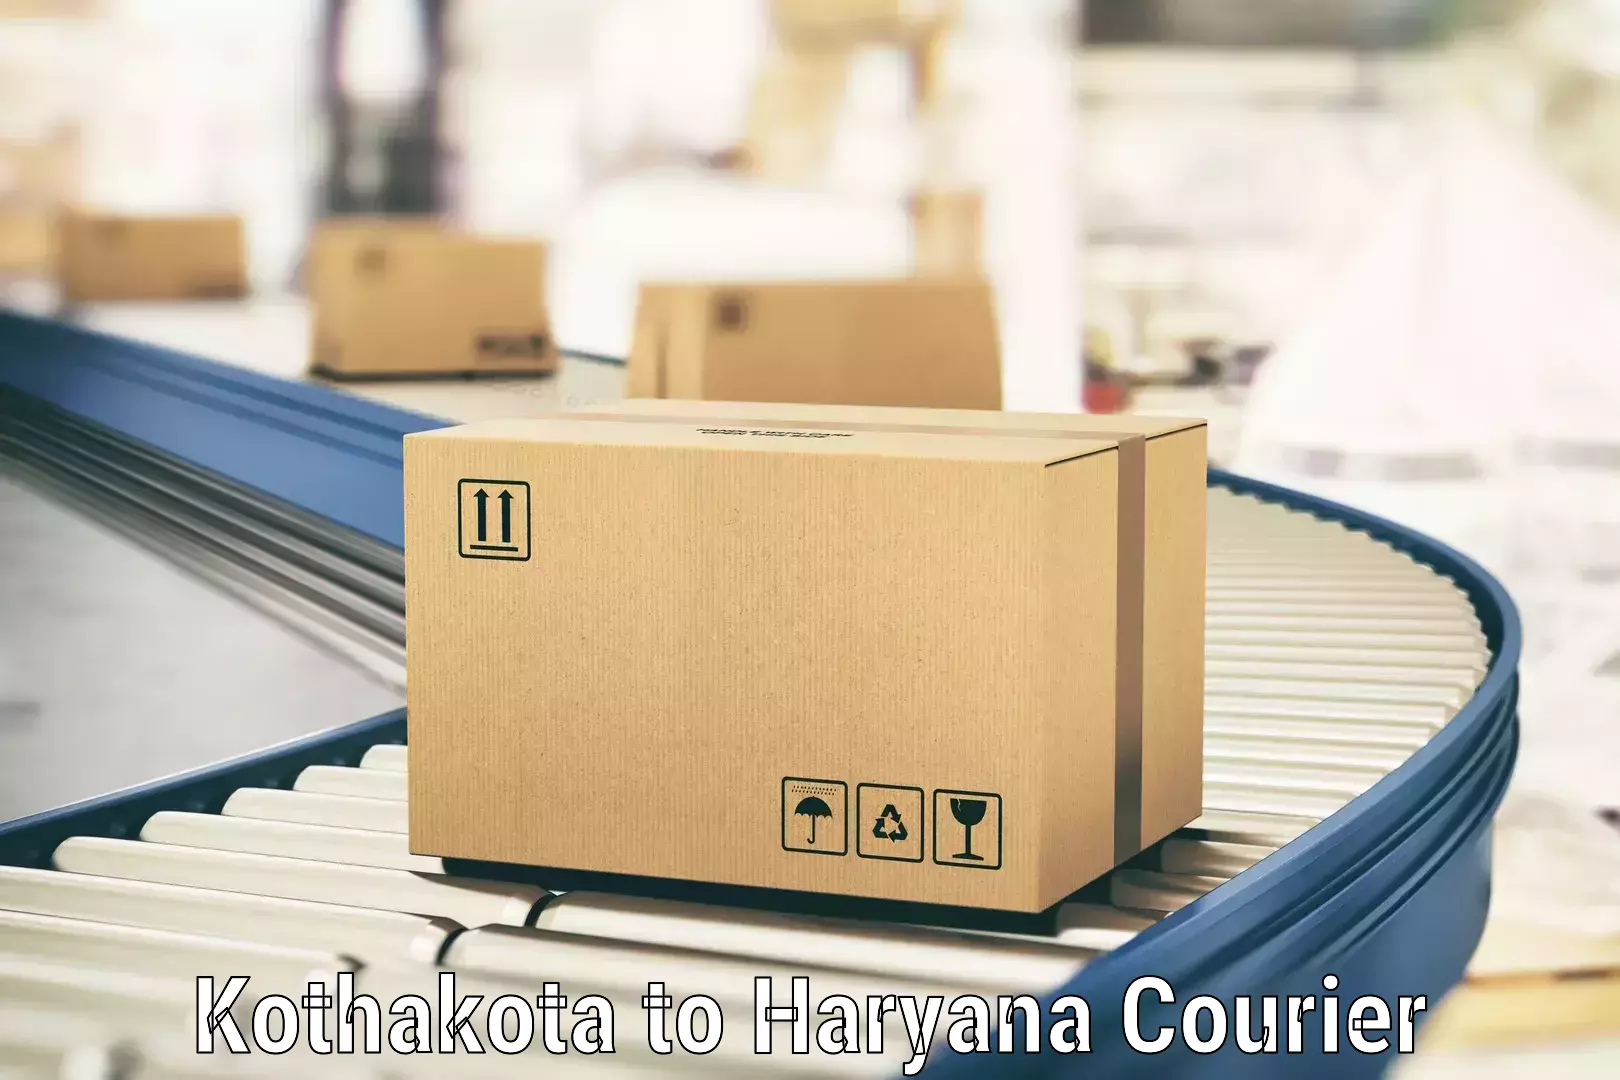 Flexible courier rates Kothakota to NCR Haryana